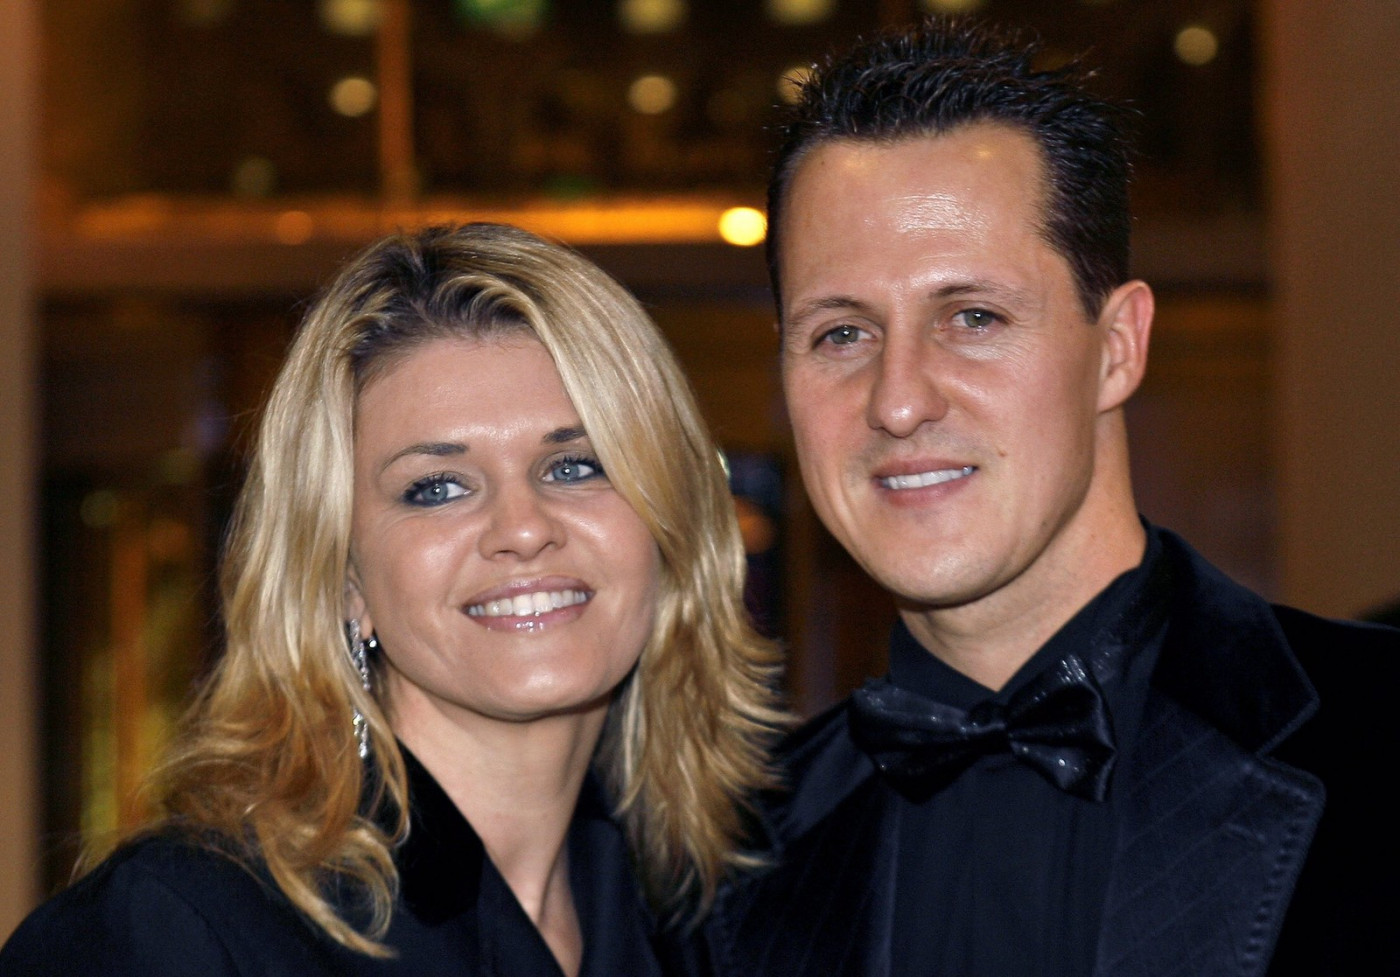 Corinna é a esposa de Michael Schumacher, heptacampeão mundial de Fórmula 1